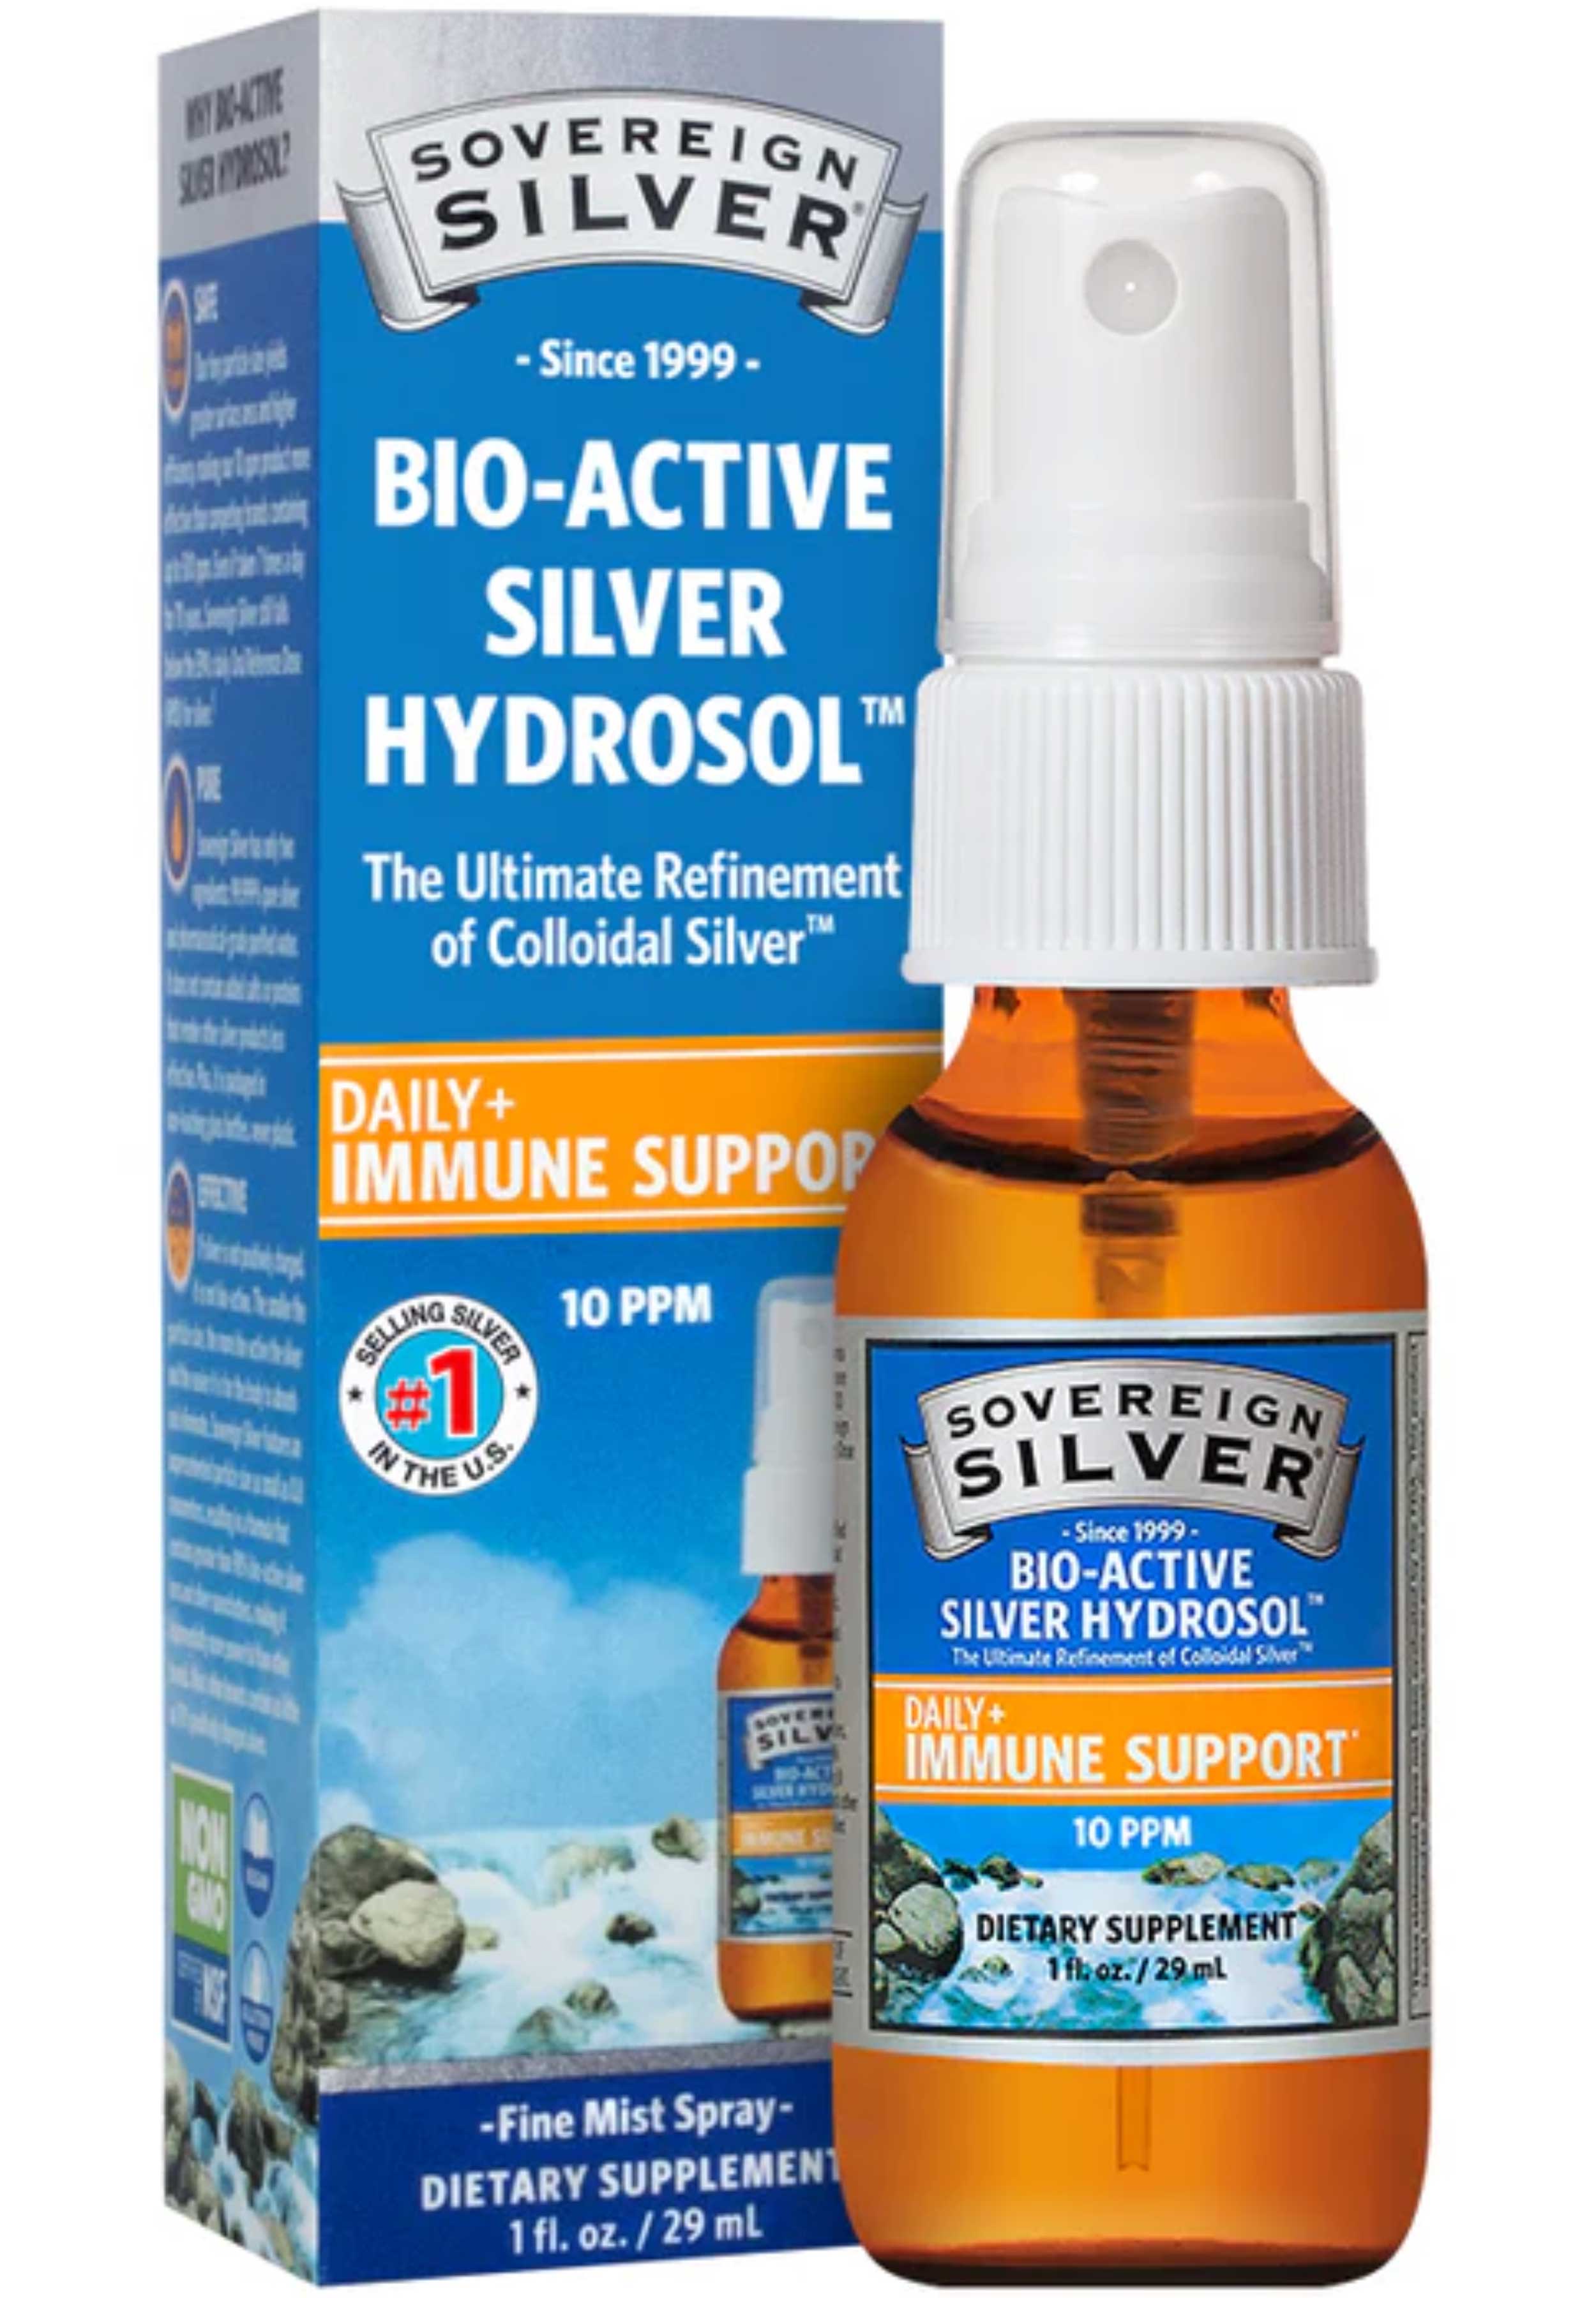 Sovereign Silver Bio-Active Silver Hydrosol - Fine Mist Spray